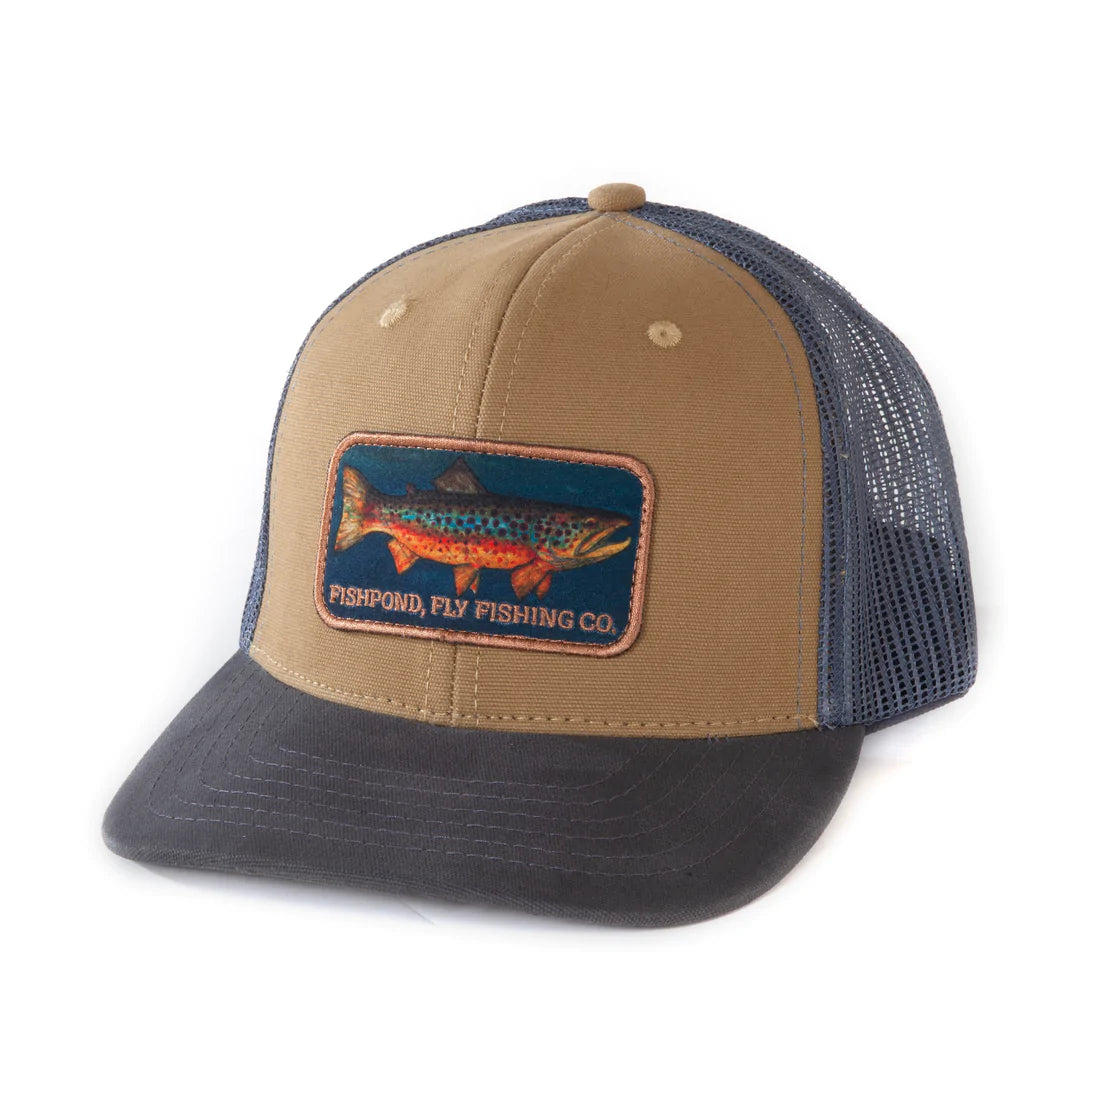 Fishpond Local Hat | Dakota Angler & Outfitter